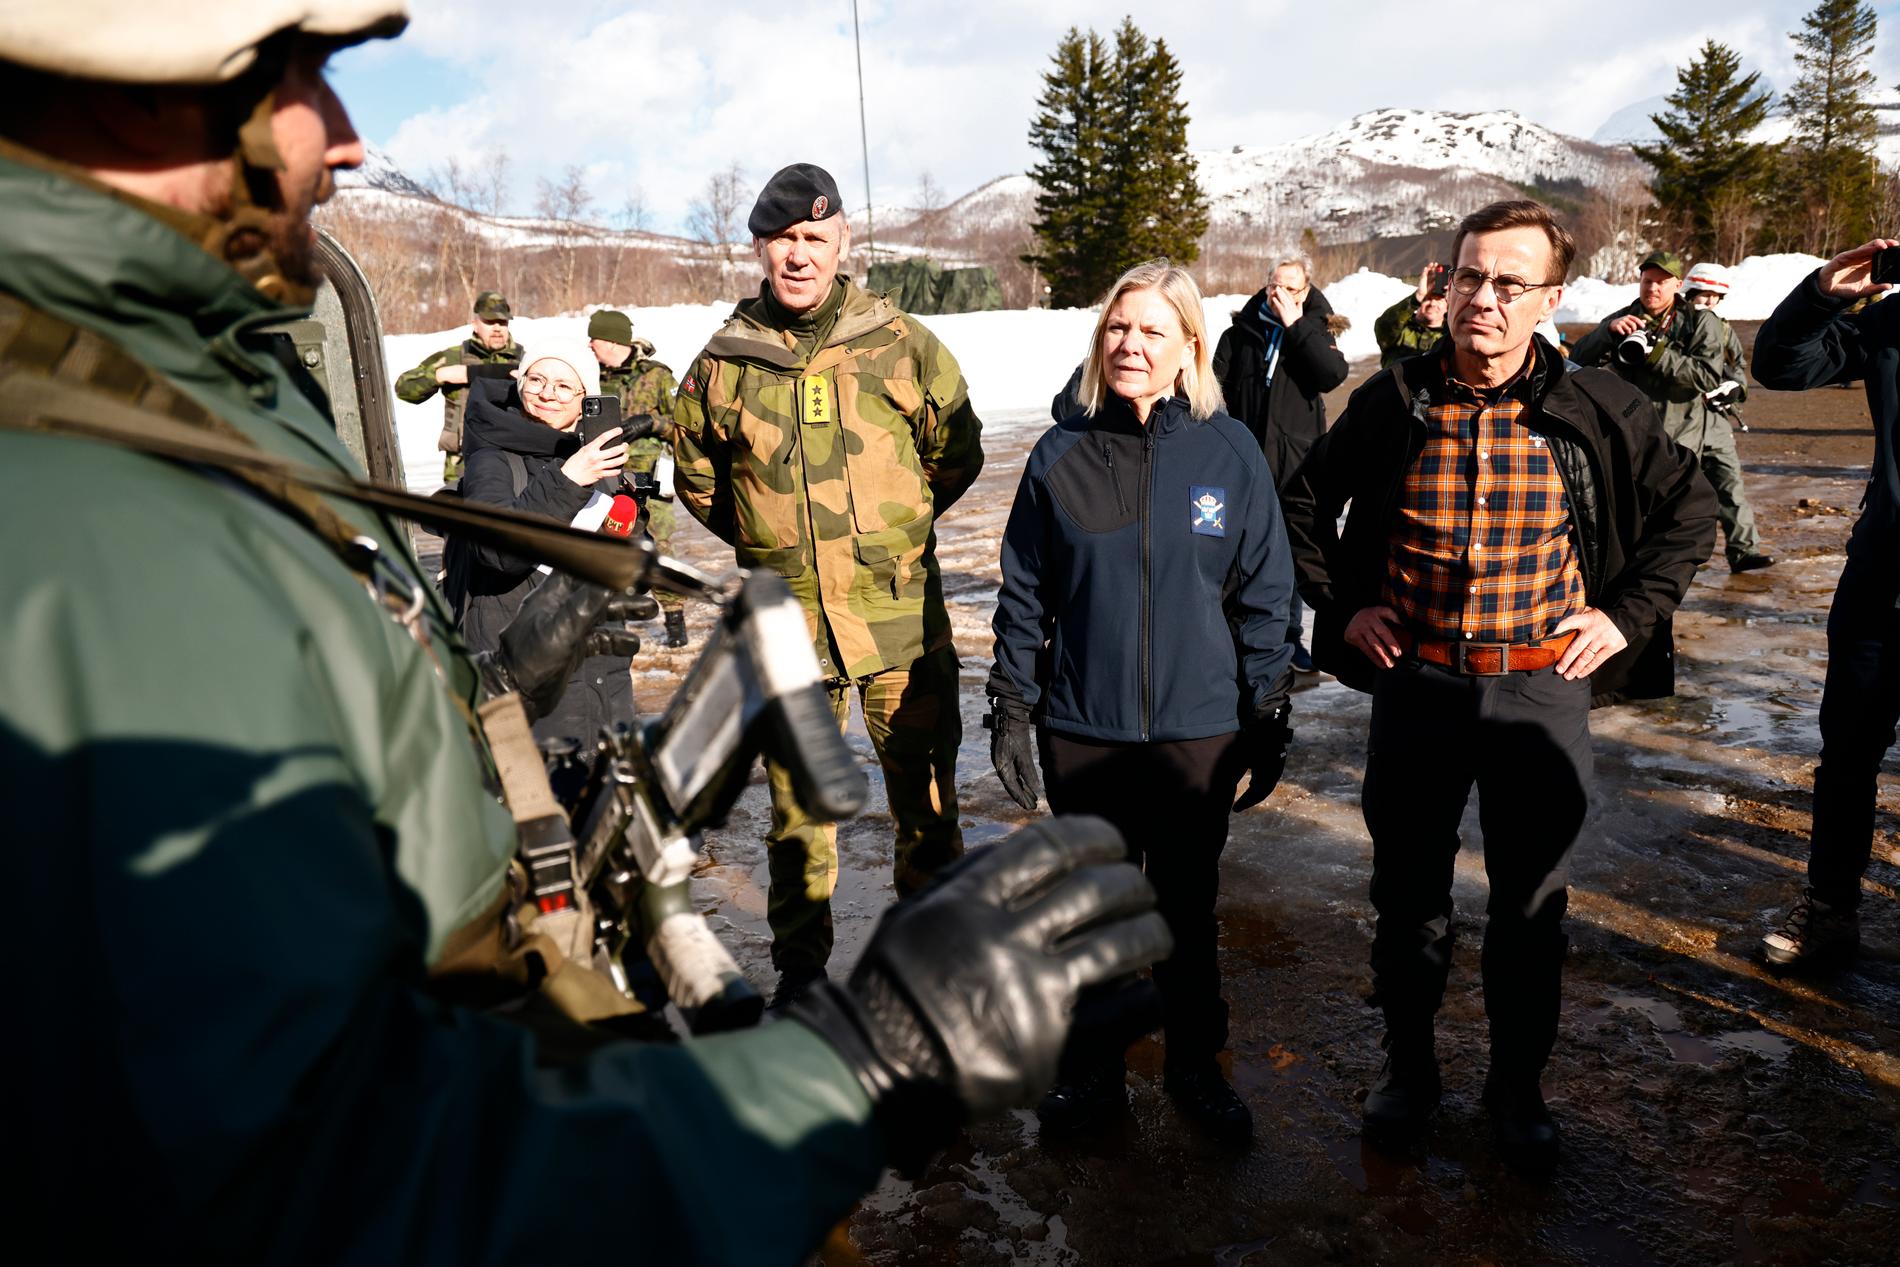 Statsminister Magdalena Andersson (S) och moderatledaren Ulf Kristersson besöker Nato-övningen ”Cold Response” i Norge tillsammans.